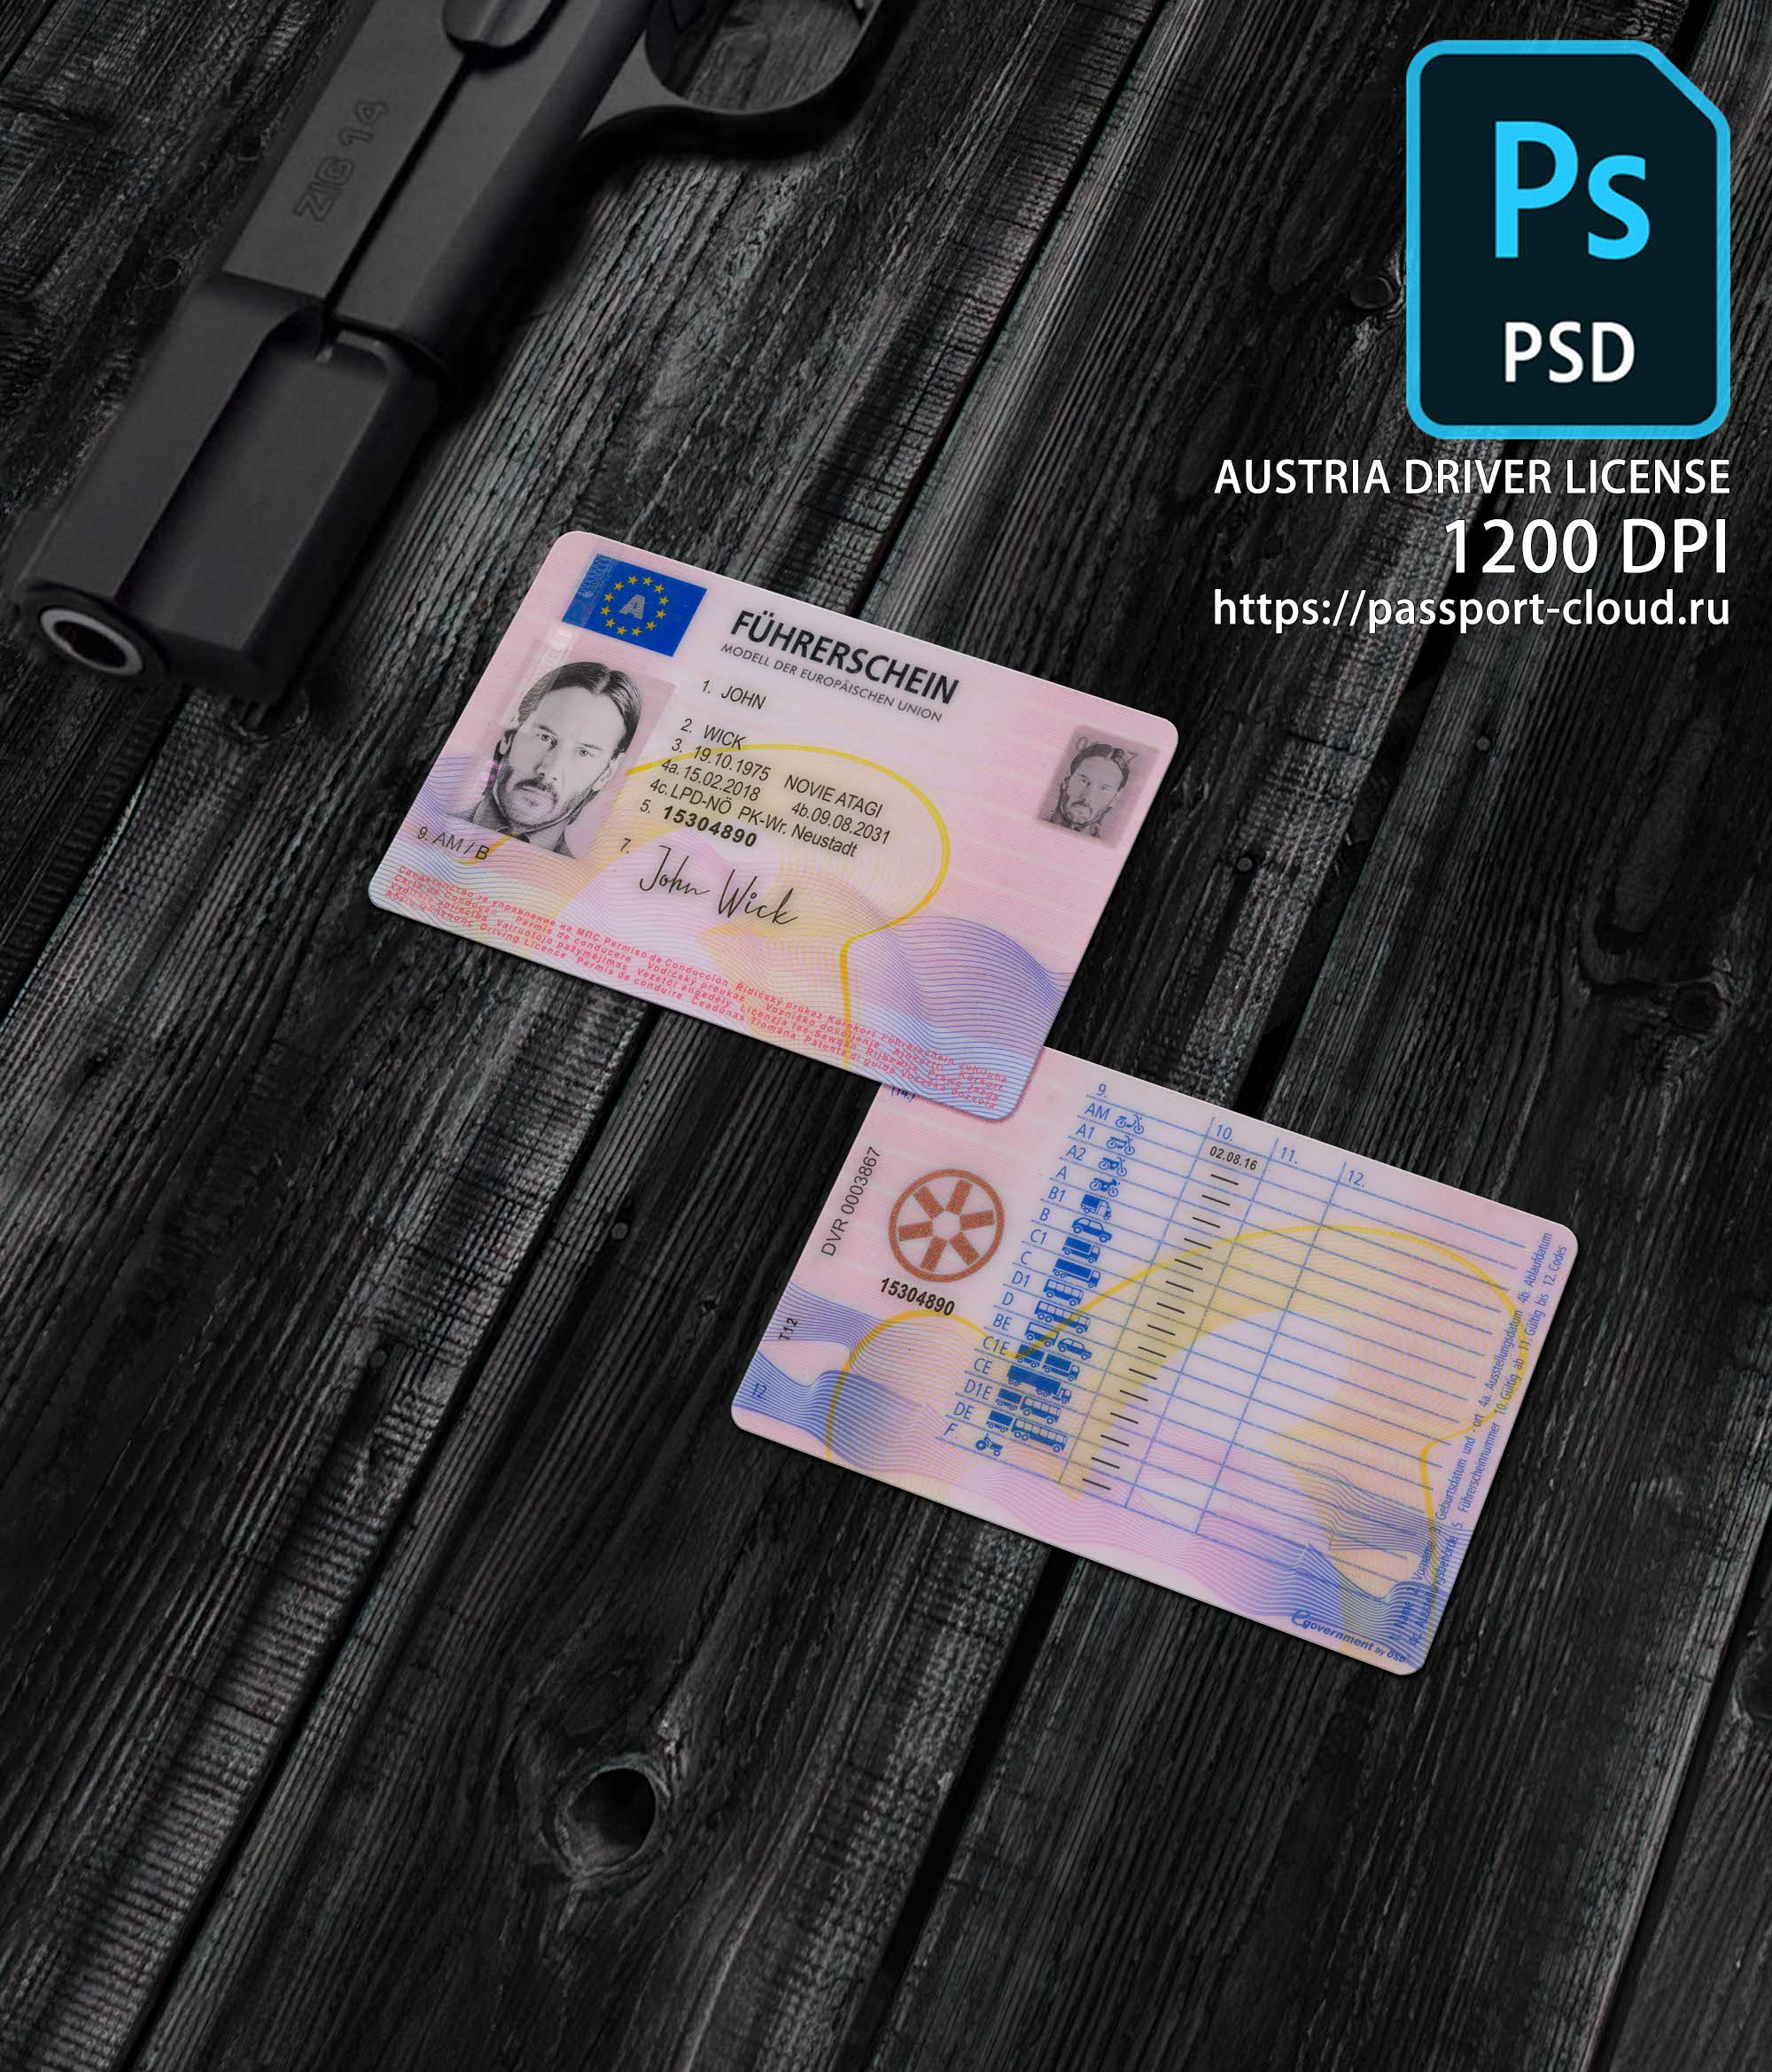 Austria Driver License 2014+1